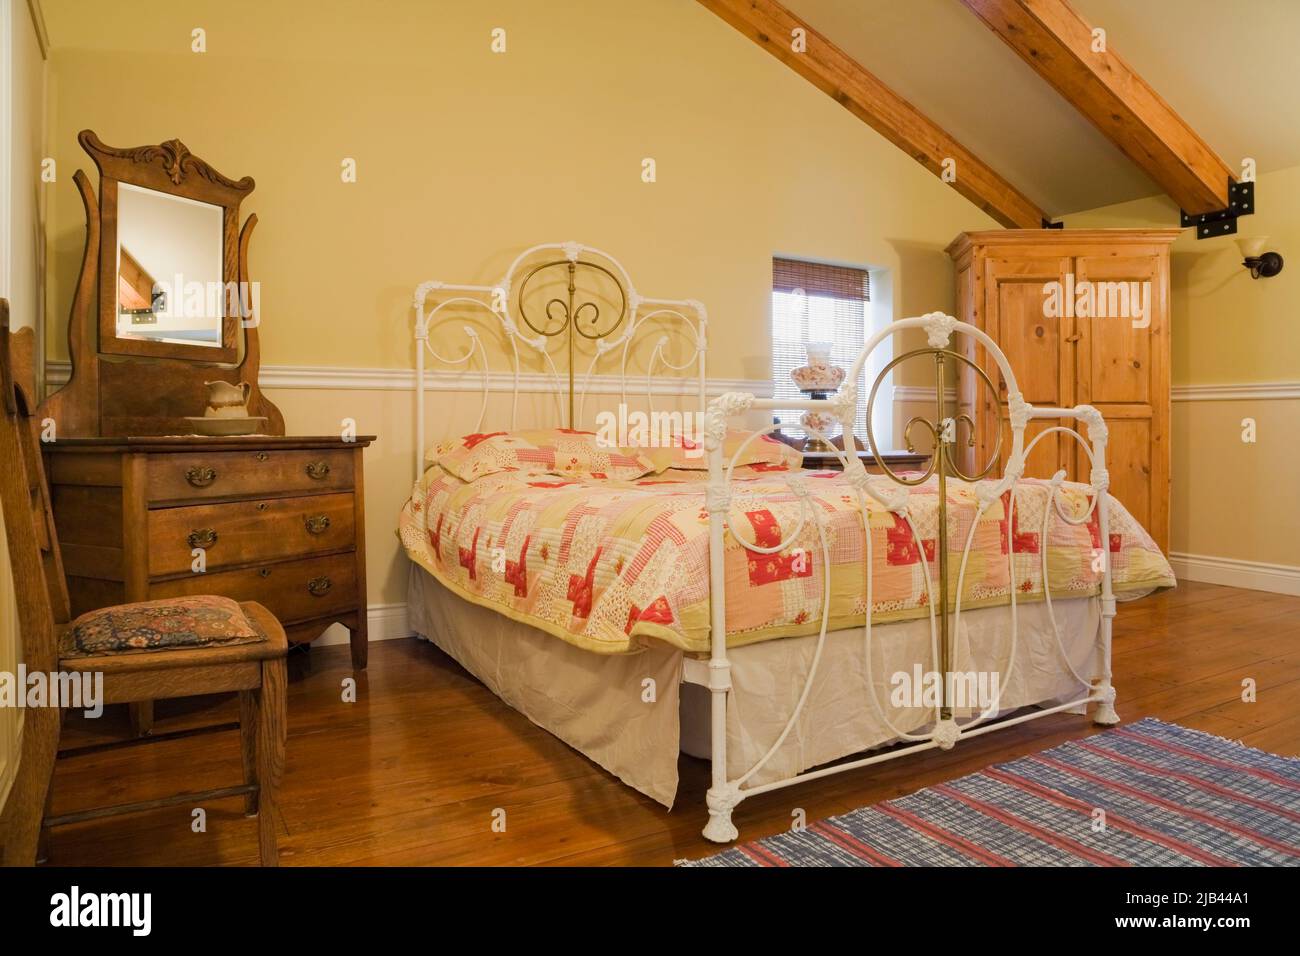 Antico letto queen size con testata e pedane in ottone e ferro battuto, arredamento in camera da letto all'interno della vecchia casa in mattoni Canadiana stile cottage 1870. Foto Stock